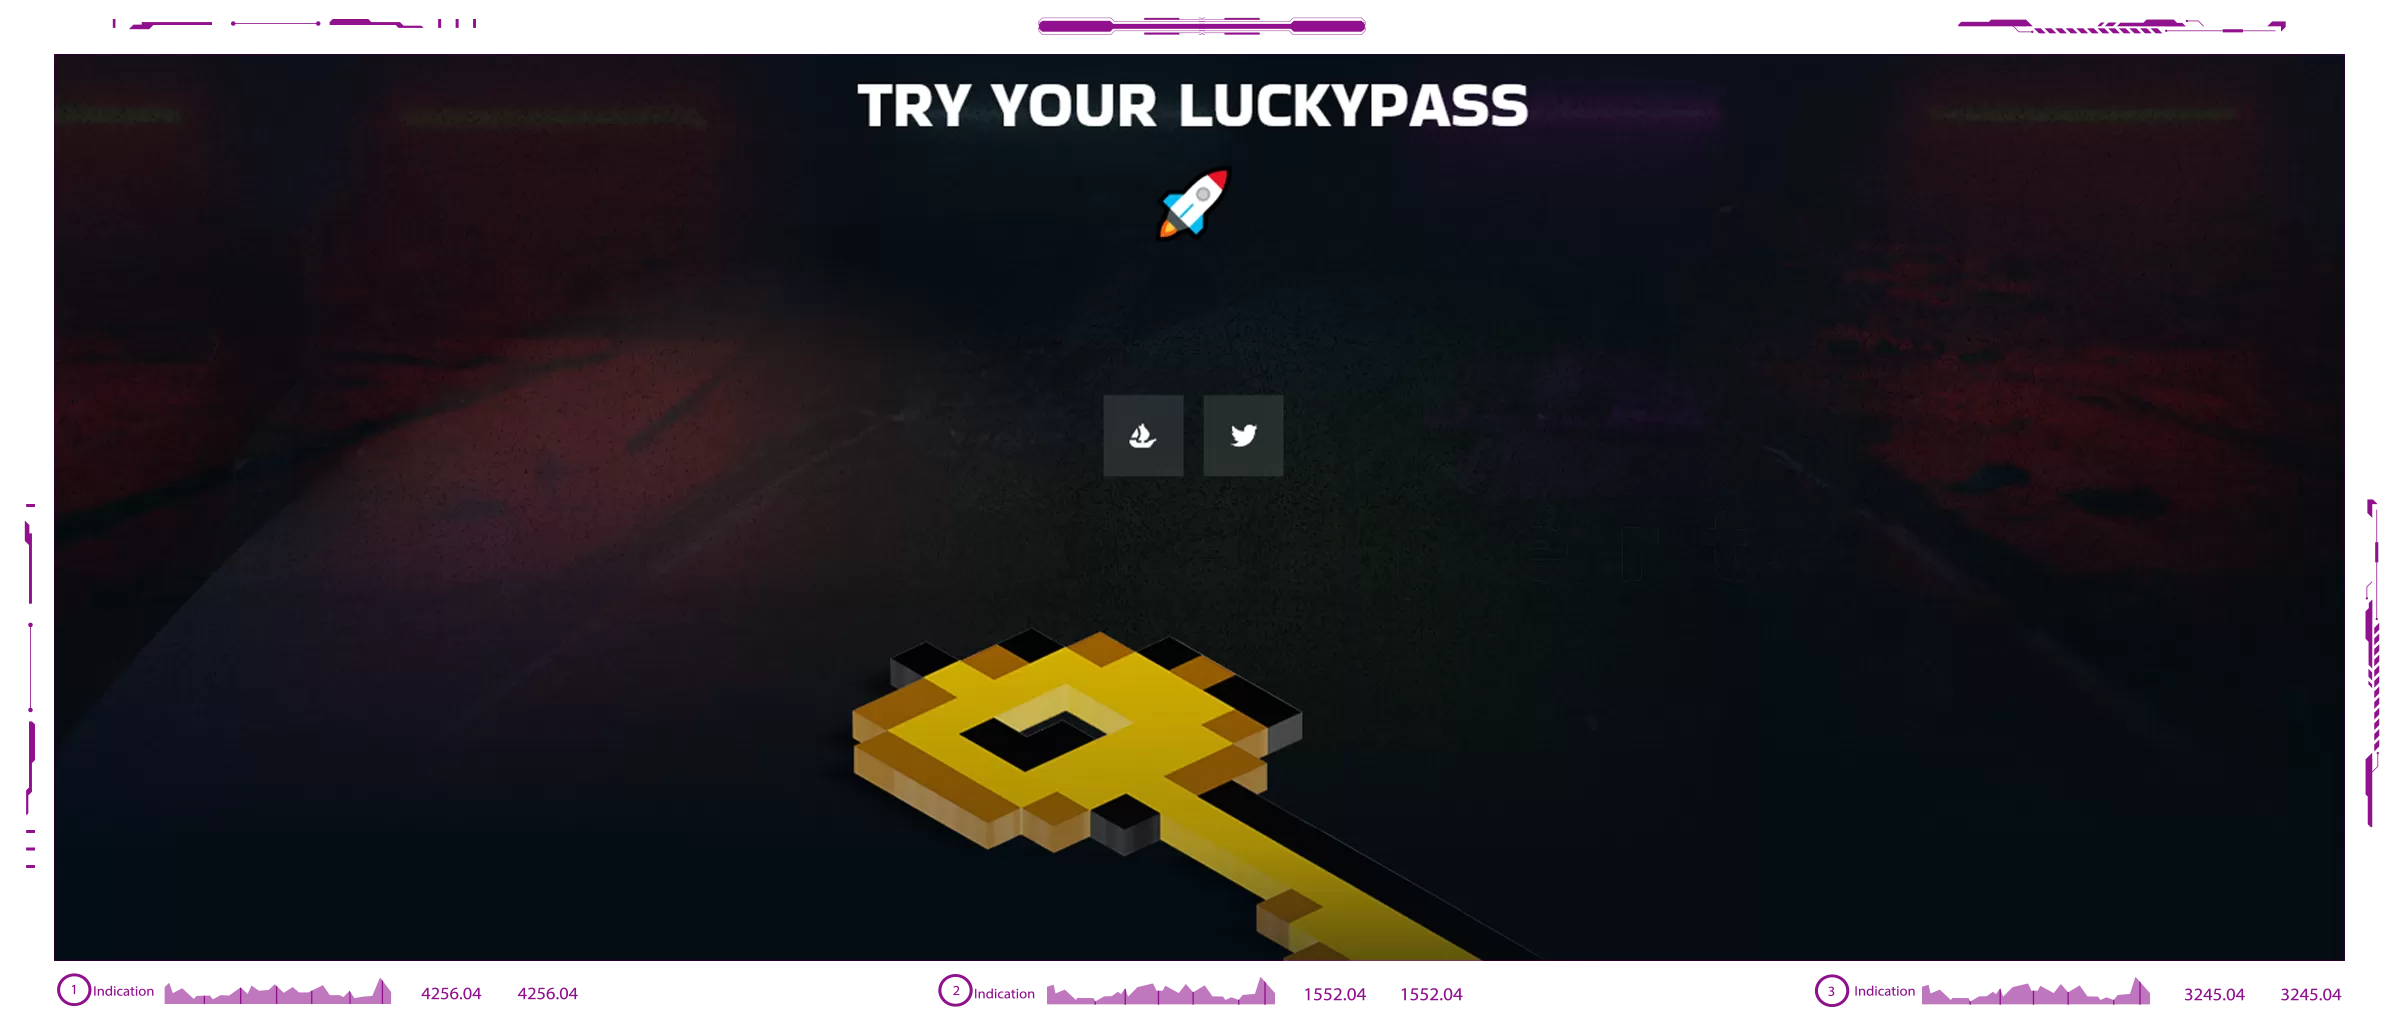 LuckyPass dapps